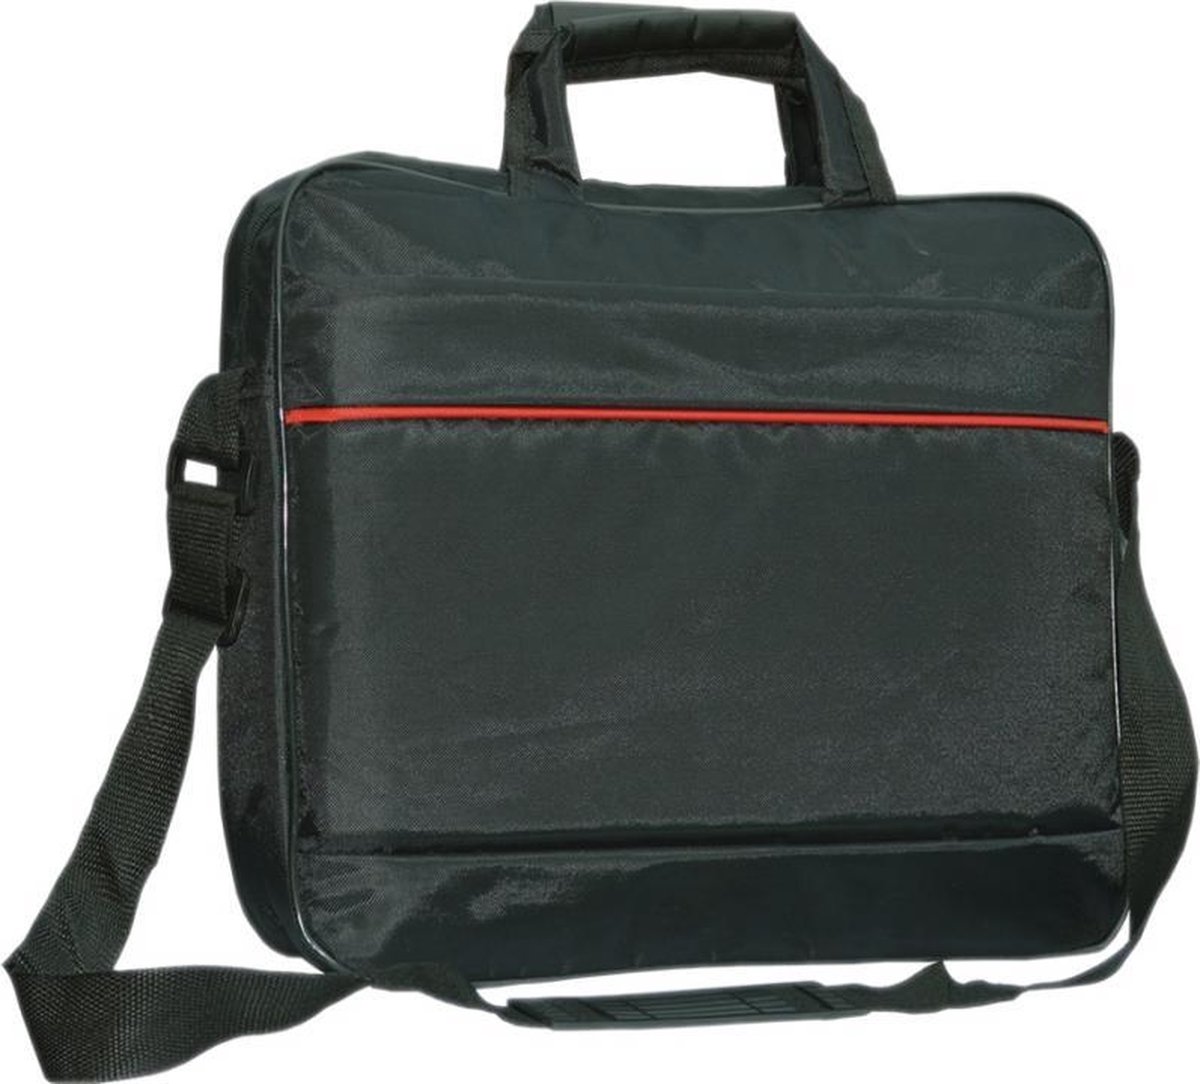 Acer Chromebook 13 Cb5 laptoptas messenger bag / schoudertas / tas , zwart , merk i12Cover